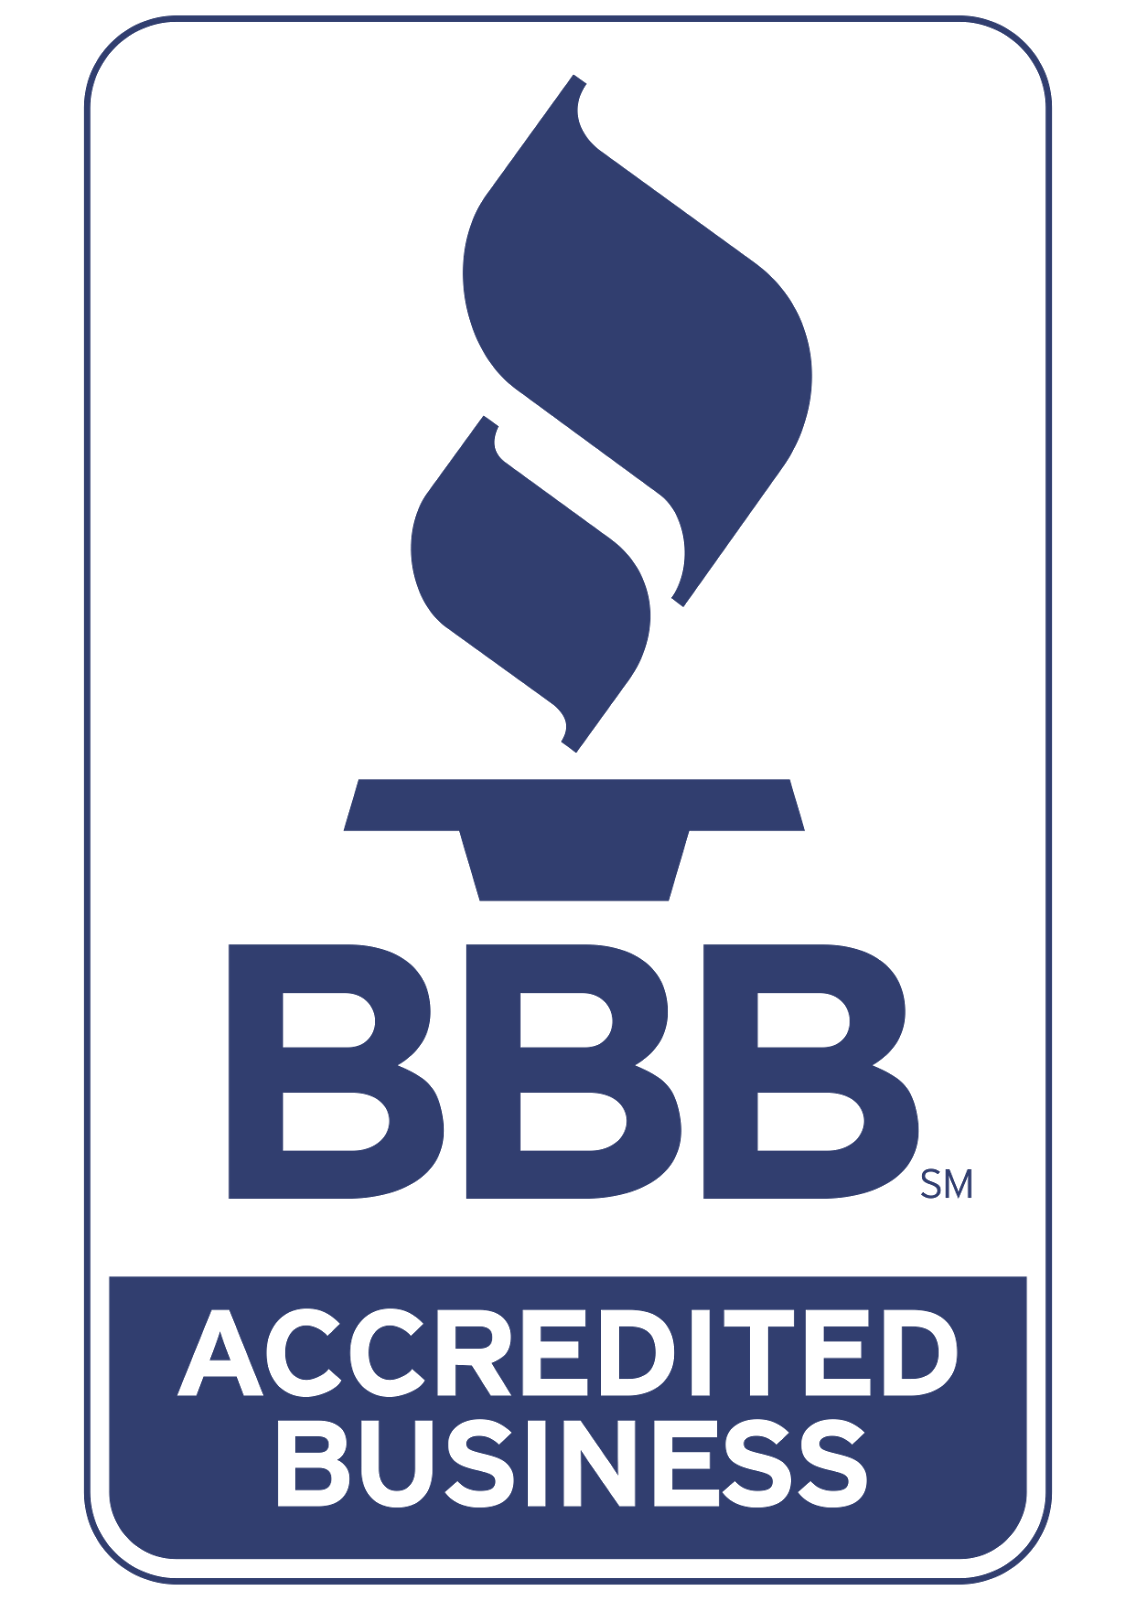 Better Business Bureau Logo Vector